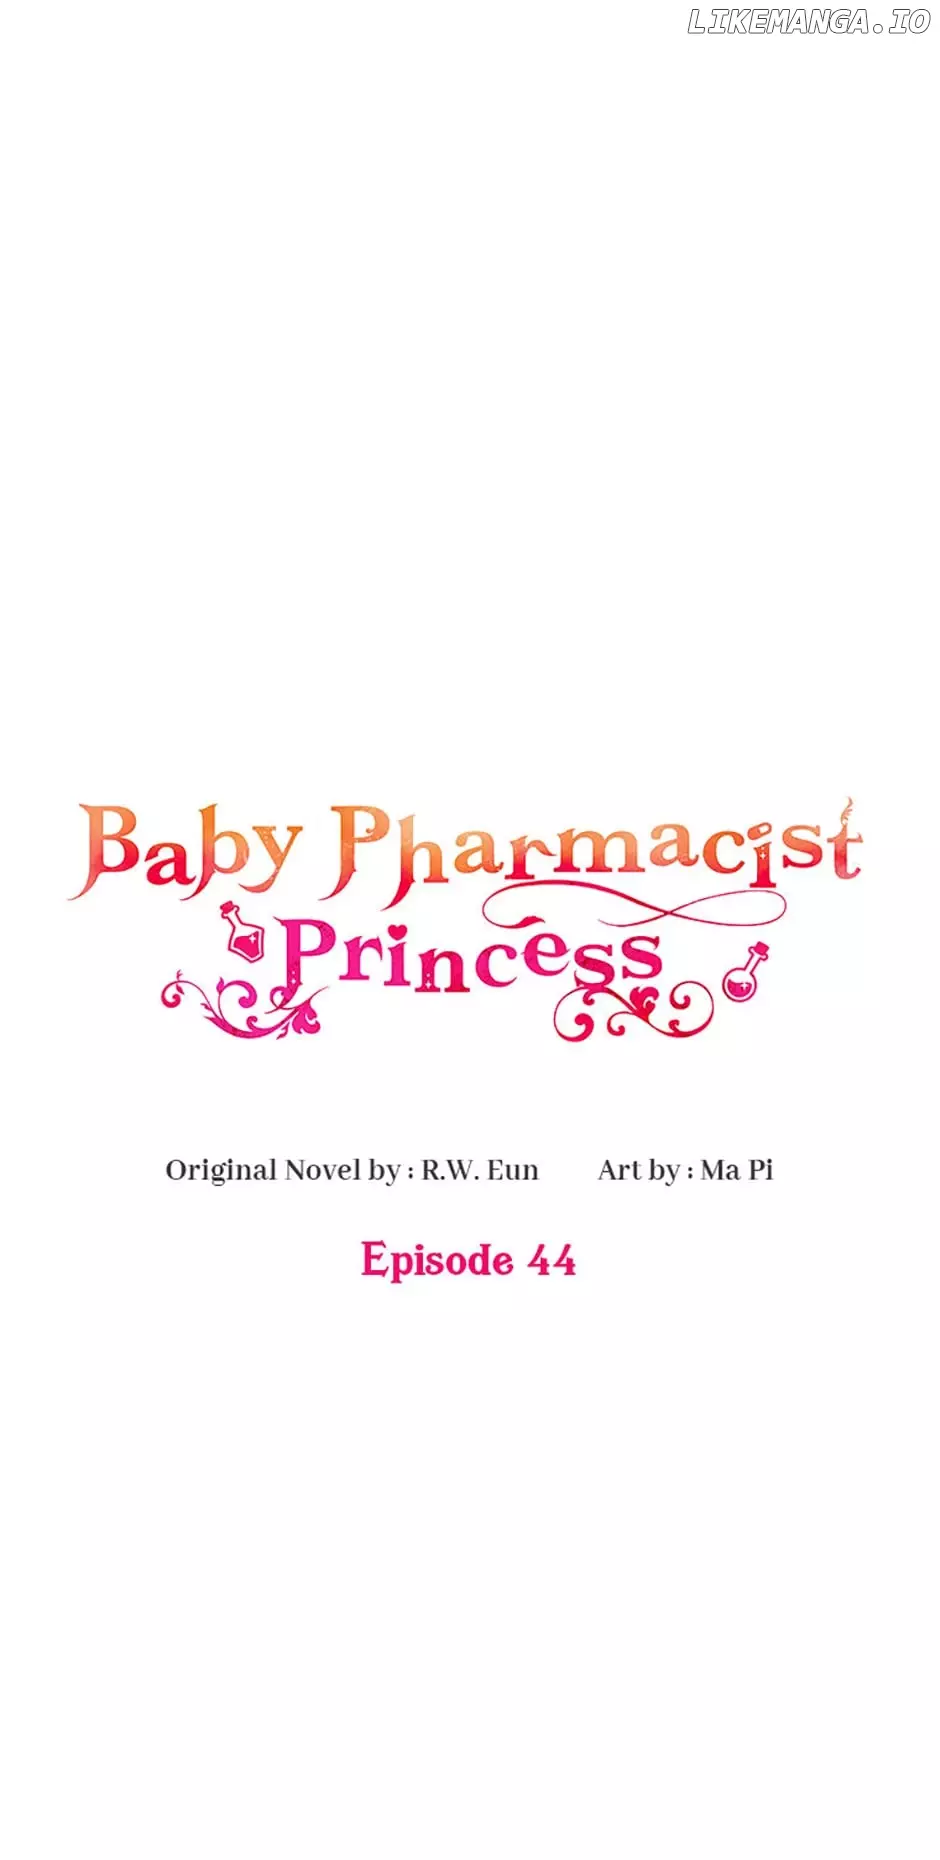 Baby Pharmacist Princess - 44 page 18-784ae3de